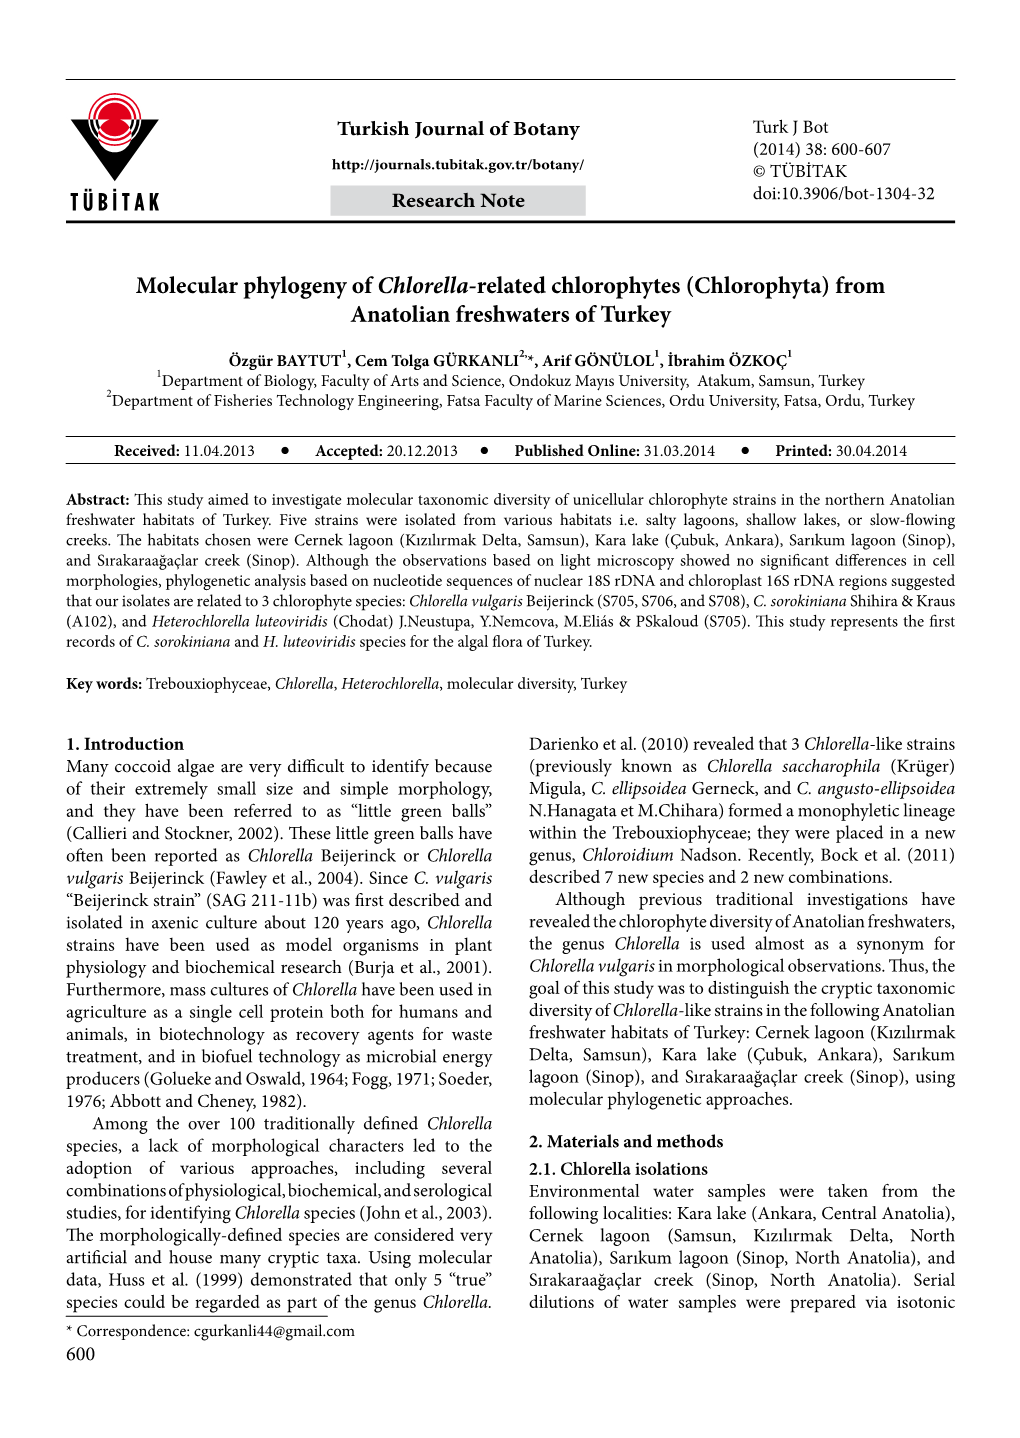 Molecular Phylogeny of Chlorella-Related Chlorophytes (Chlorophyta) from Anatolian Freshwaters of Turkey